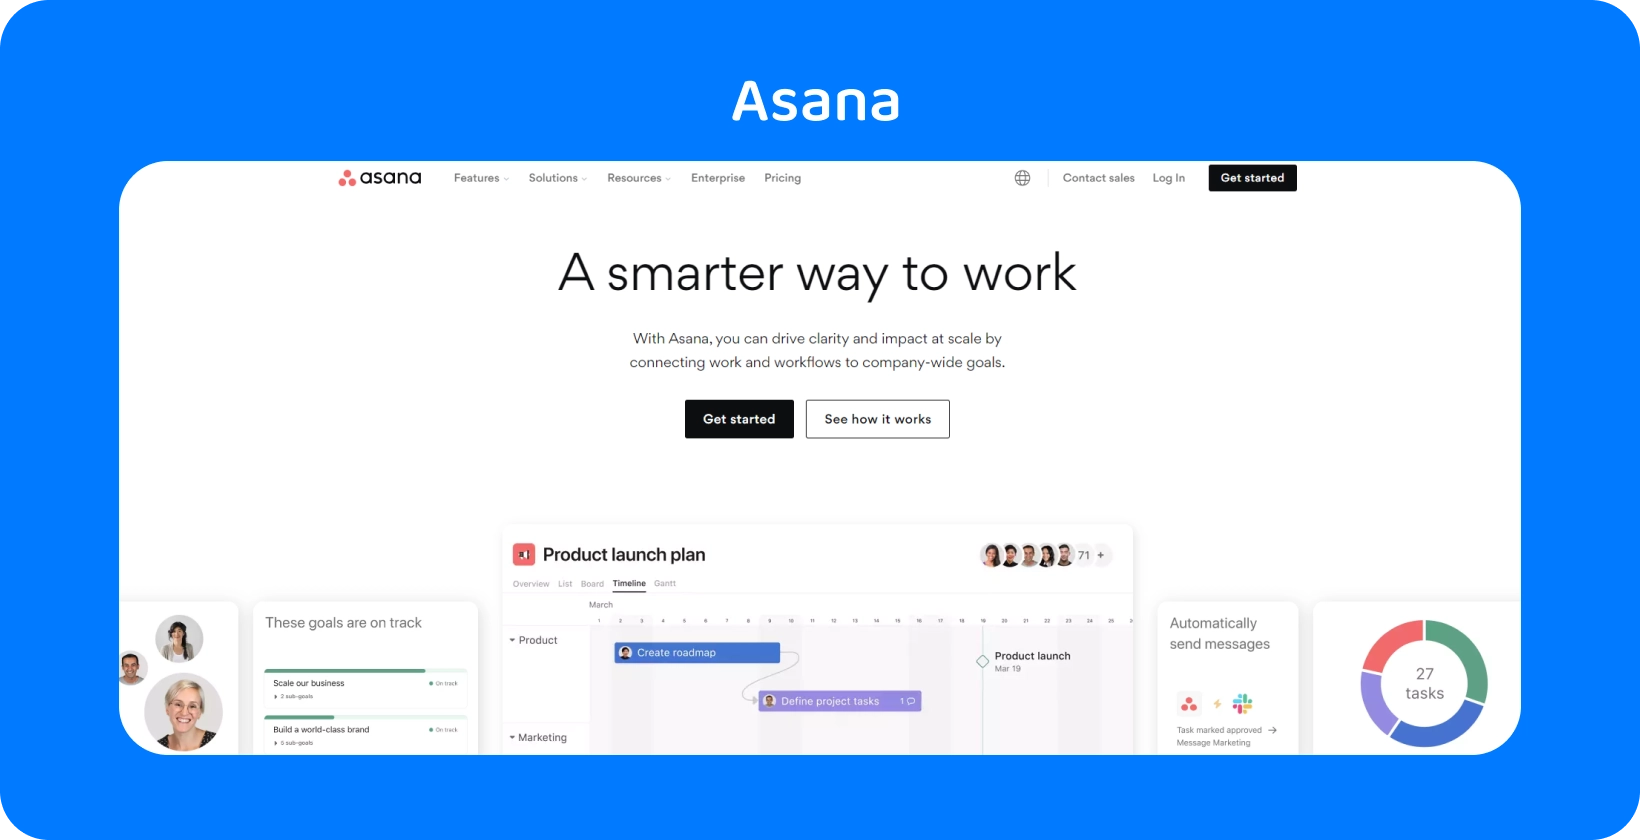 ממשק ניהול הפרויקטים של Asana מותאם לשיתוף פעולה של הצוות המשפטי.